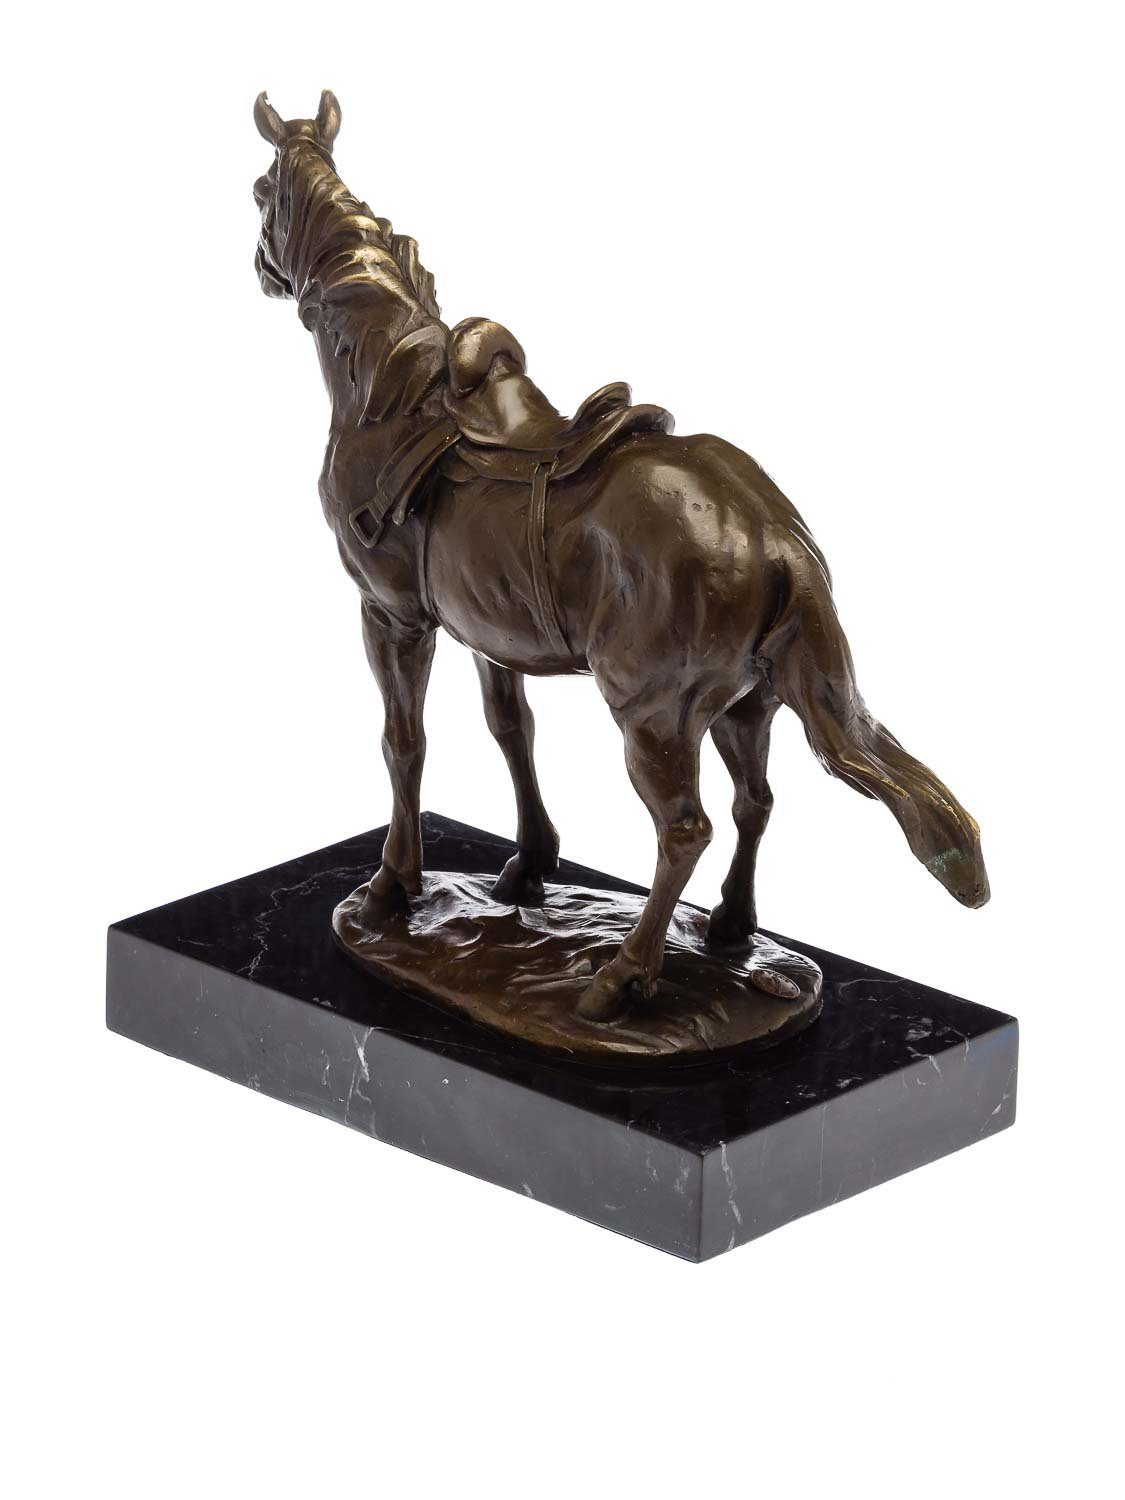 Pferd Aubaho Bronzeskulptur auf Figur Antik-Stil Statu im Bronze Steinplinthe Skulptur